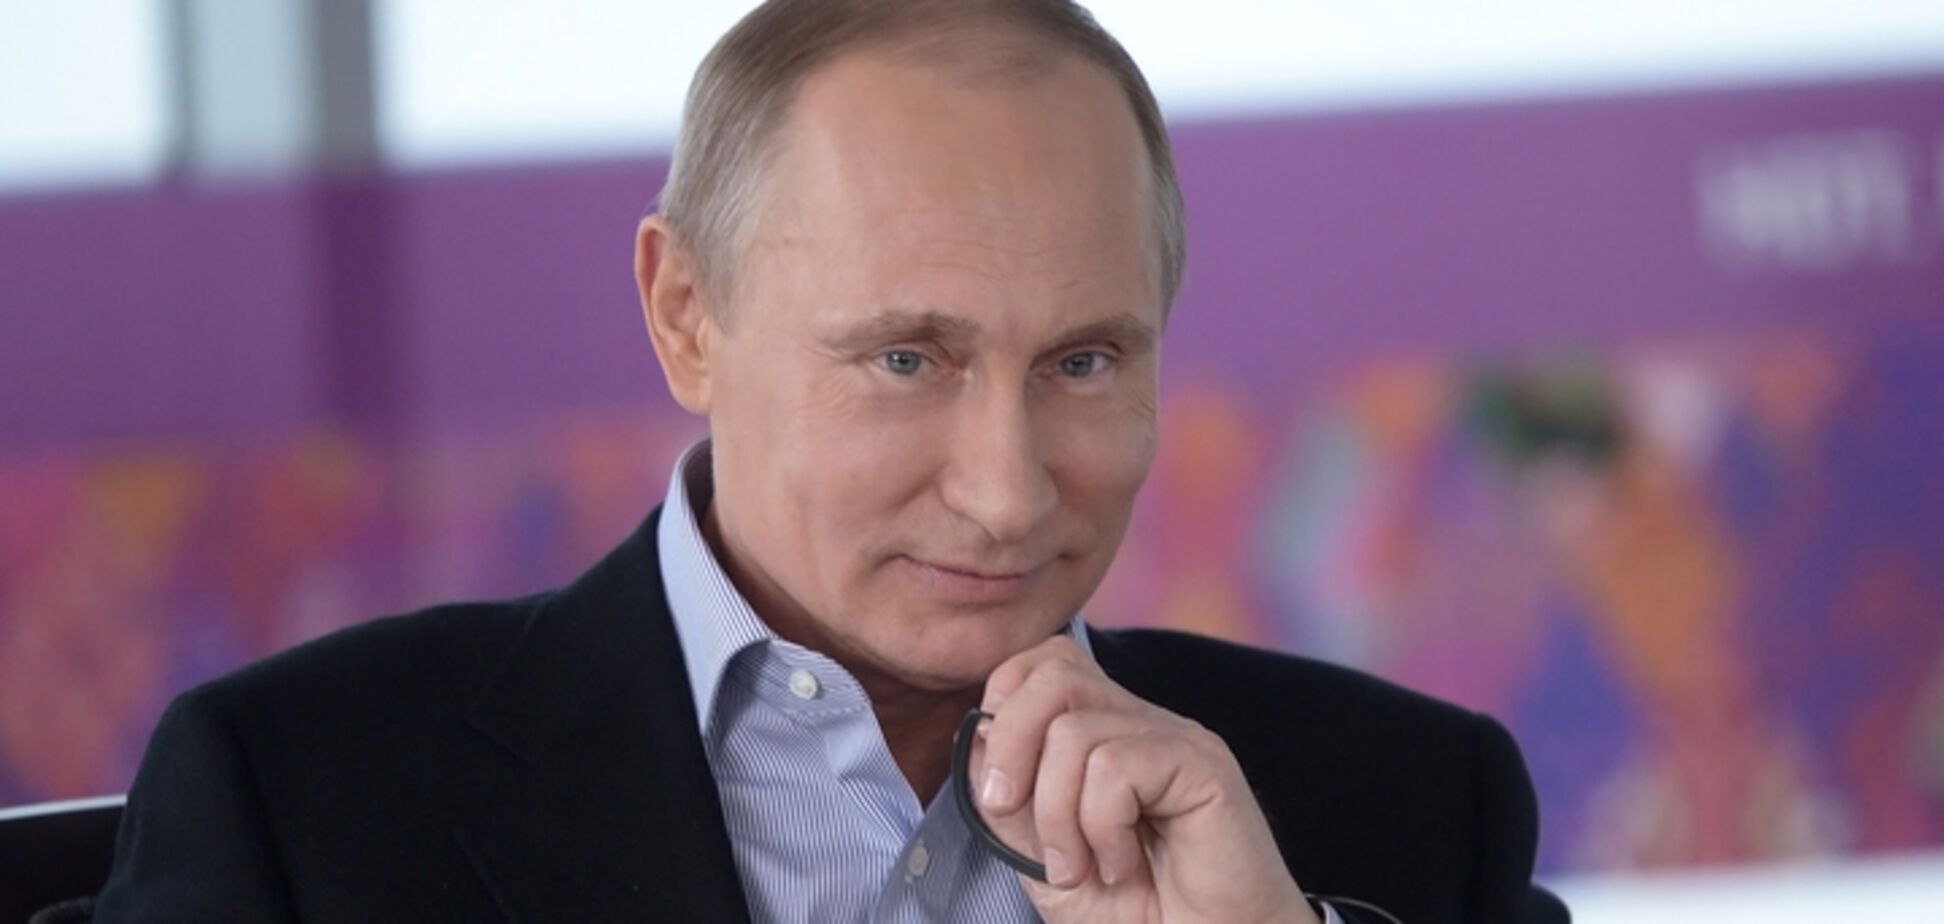 Бойкот спецоперации 'Выборы президента России'